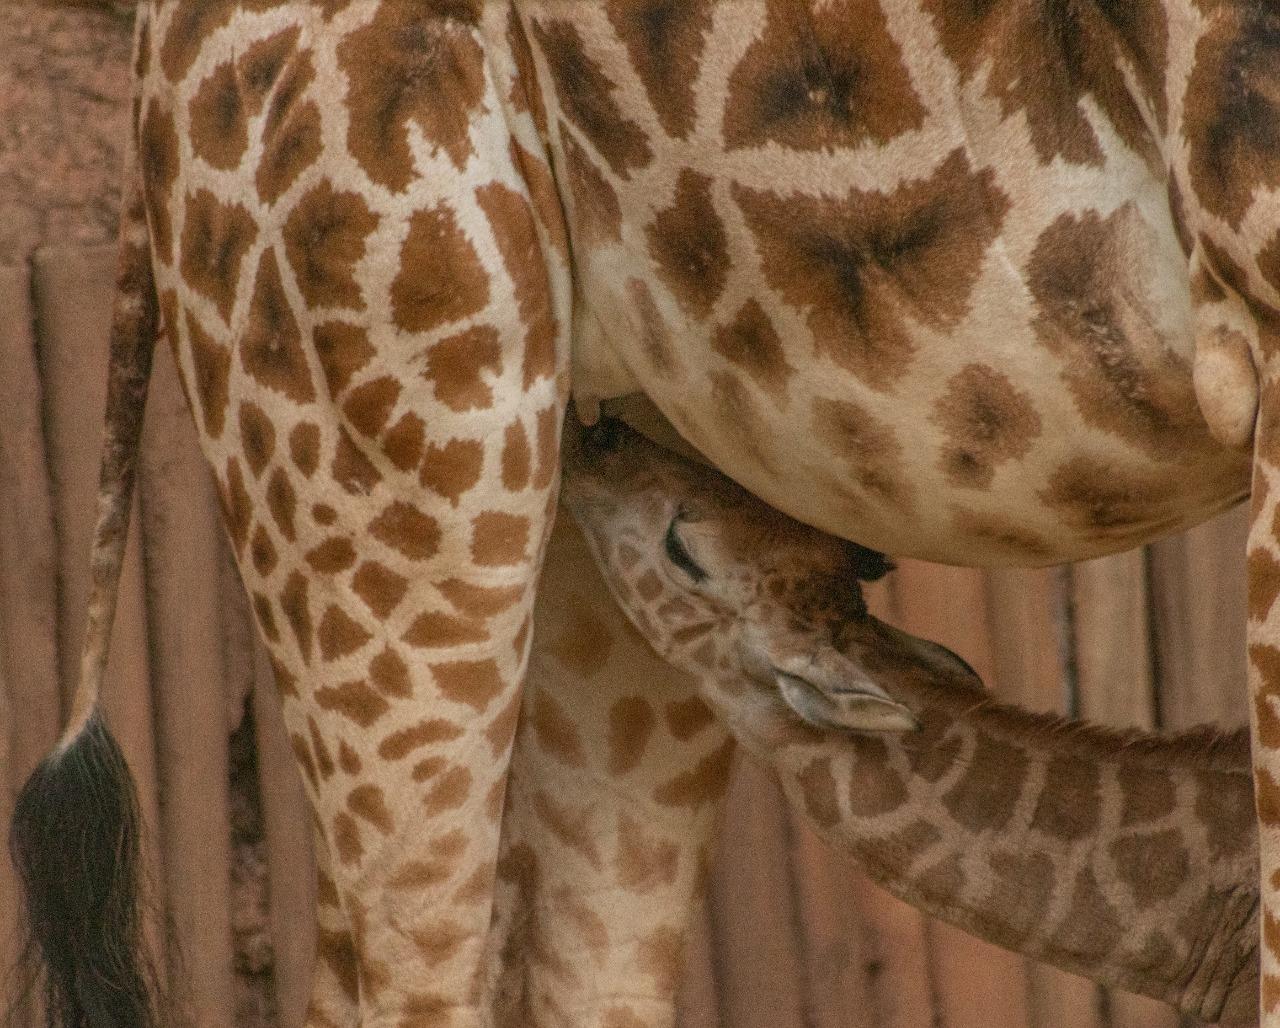 Zooparque registra nascimento de girafa ameaçada de extinção